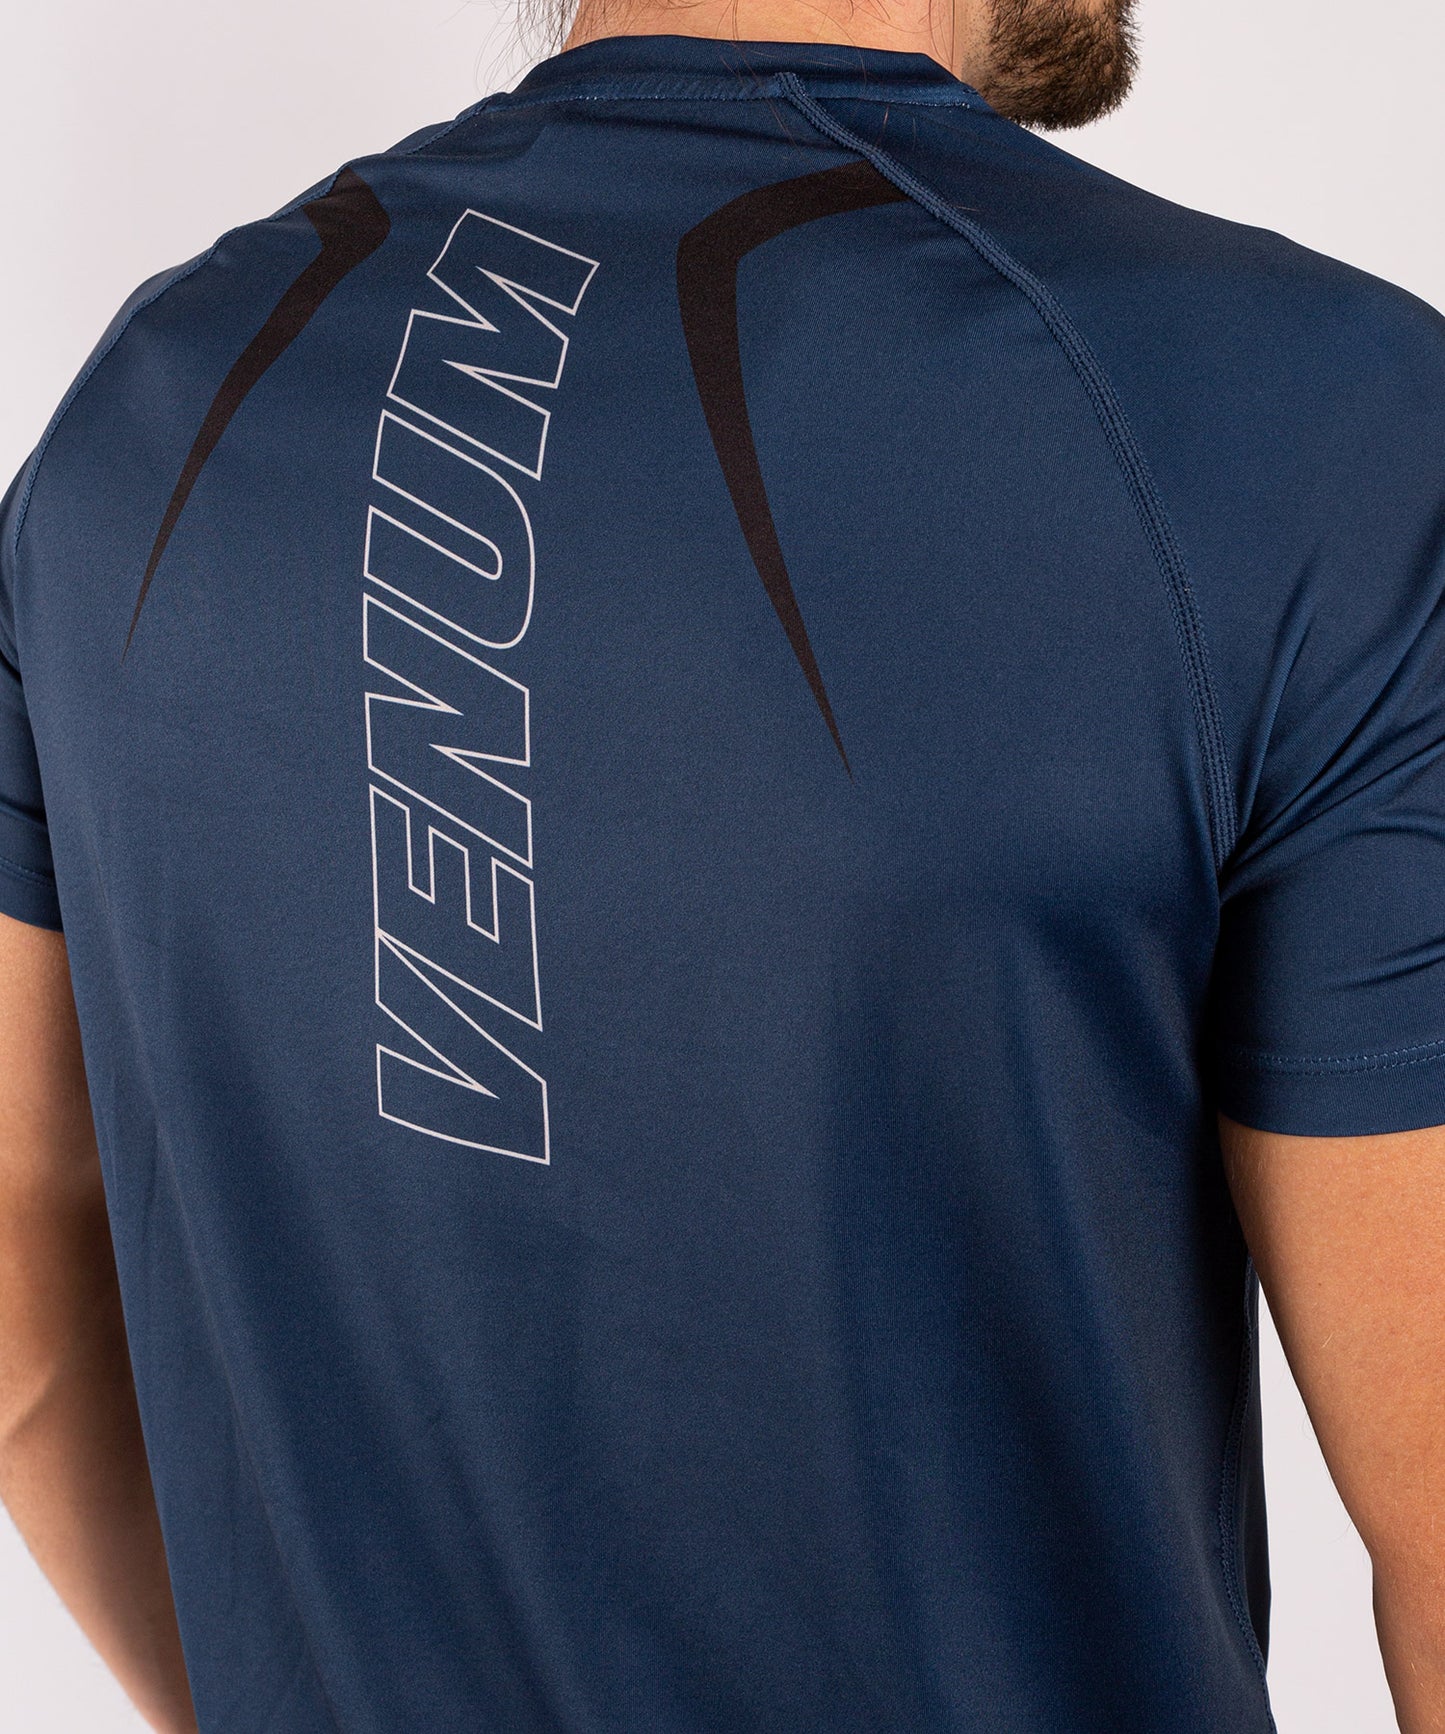 Camiseta Dry-Tech Venum Contender 5.0 - marino/arena